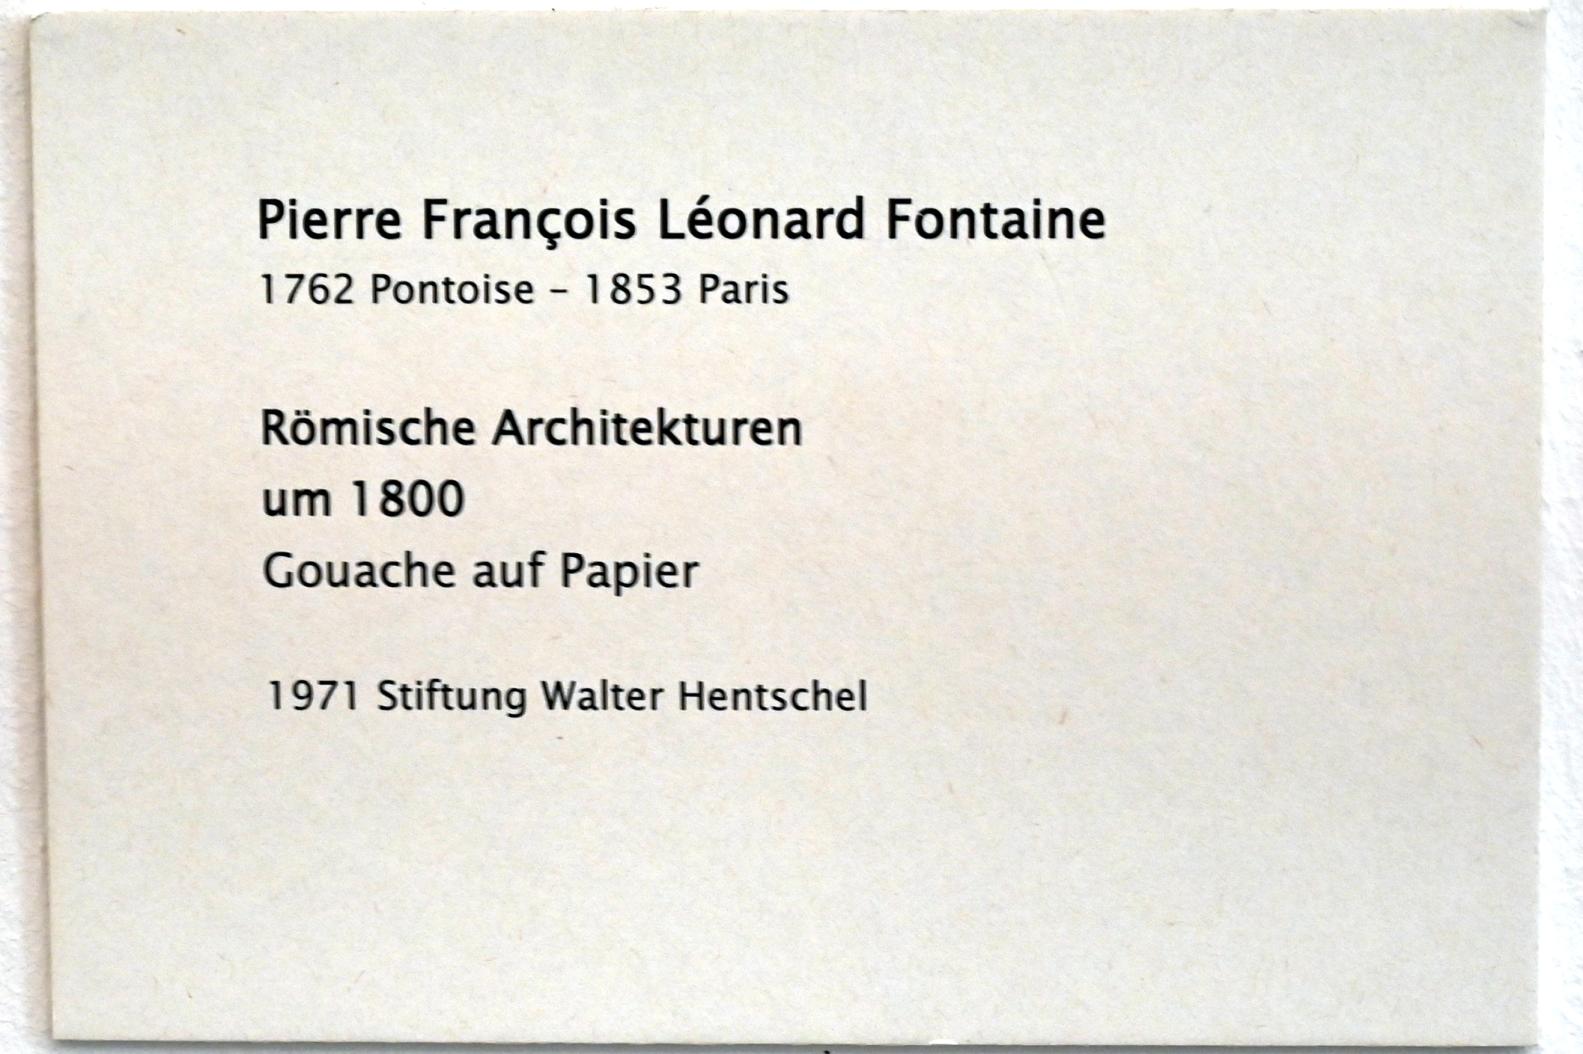 Pierre-François-Léonard Fontaine (1800), Römische Architekturen, Zwickau, Kunstsammlungen, Zeit der Empfindsamkeit, um 1800, Bild 2/2